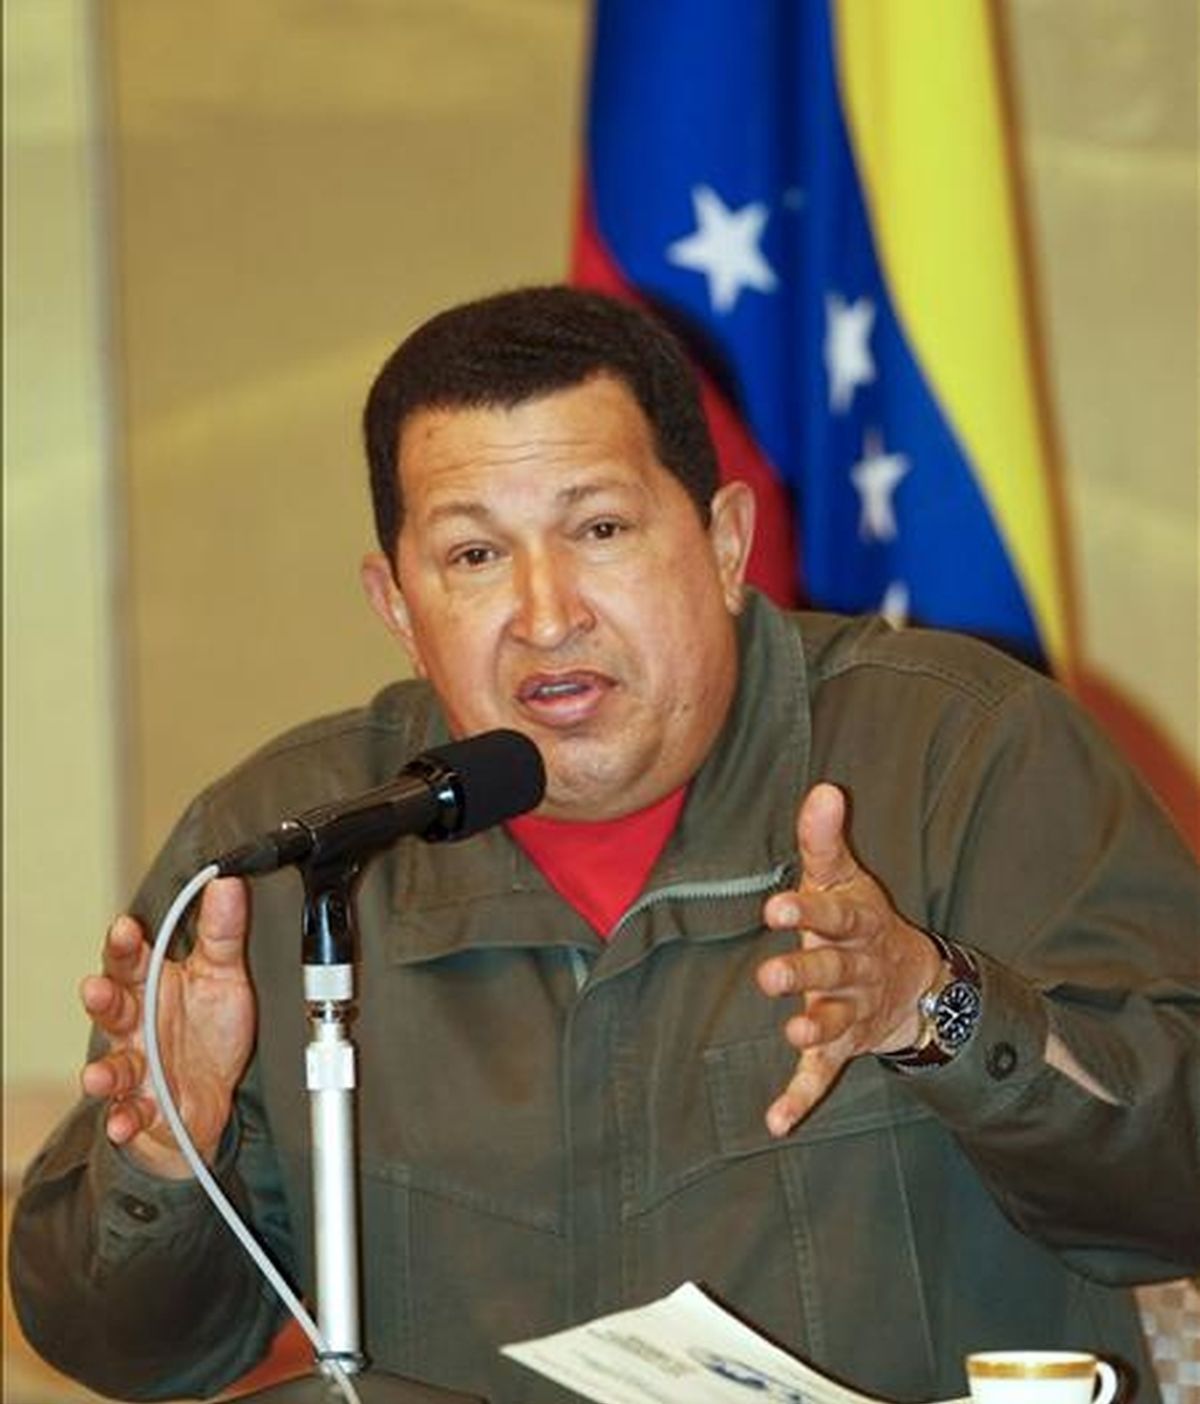 El presidente de Venezuela, Hugo Chávez, atiende a los medios durante la rueda de prensa ofrecida en Tokio (Japón), hoy 7 de abril. Chavez ha realizado una visita de tres días a Japón y ha viajado a China. EFE/Dai Kurokawa